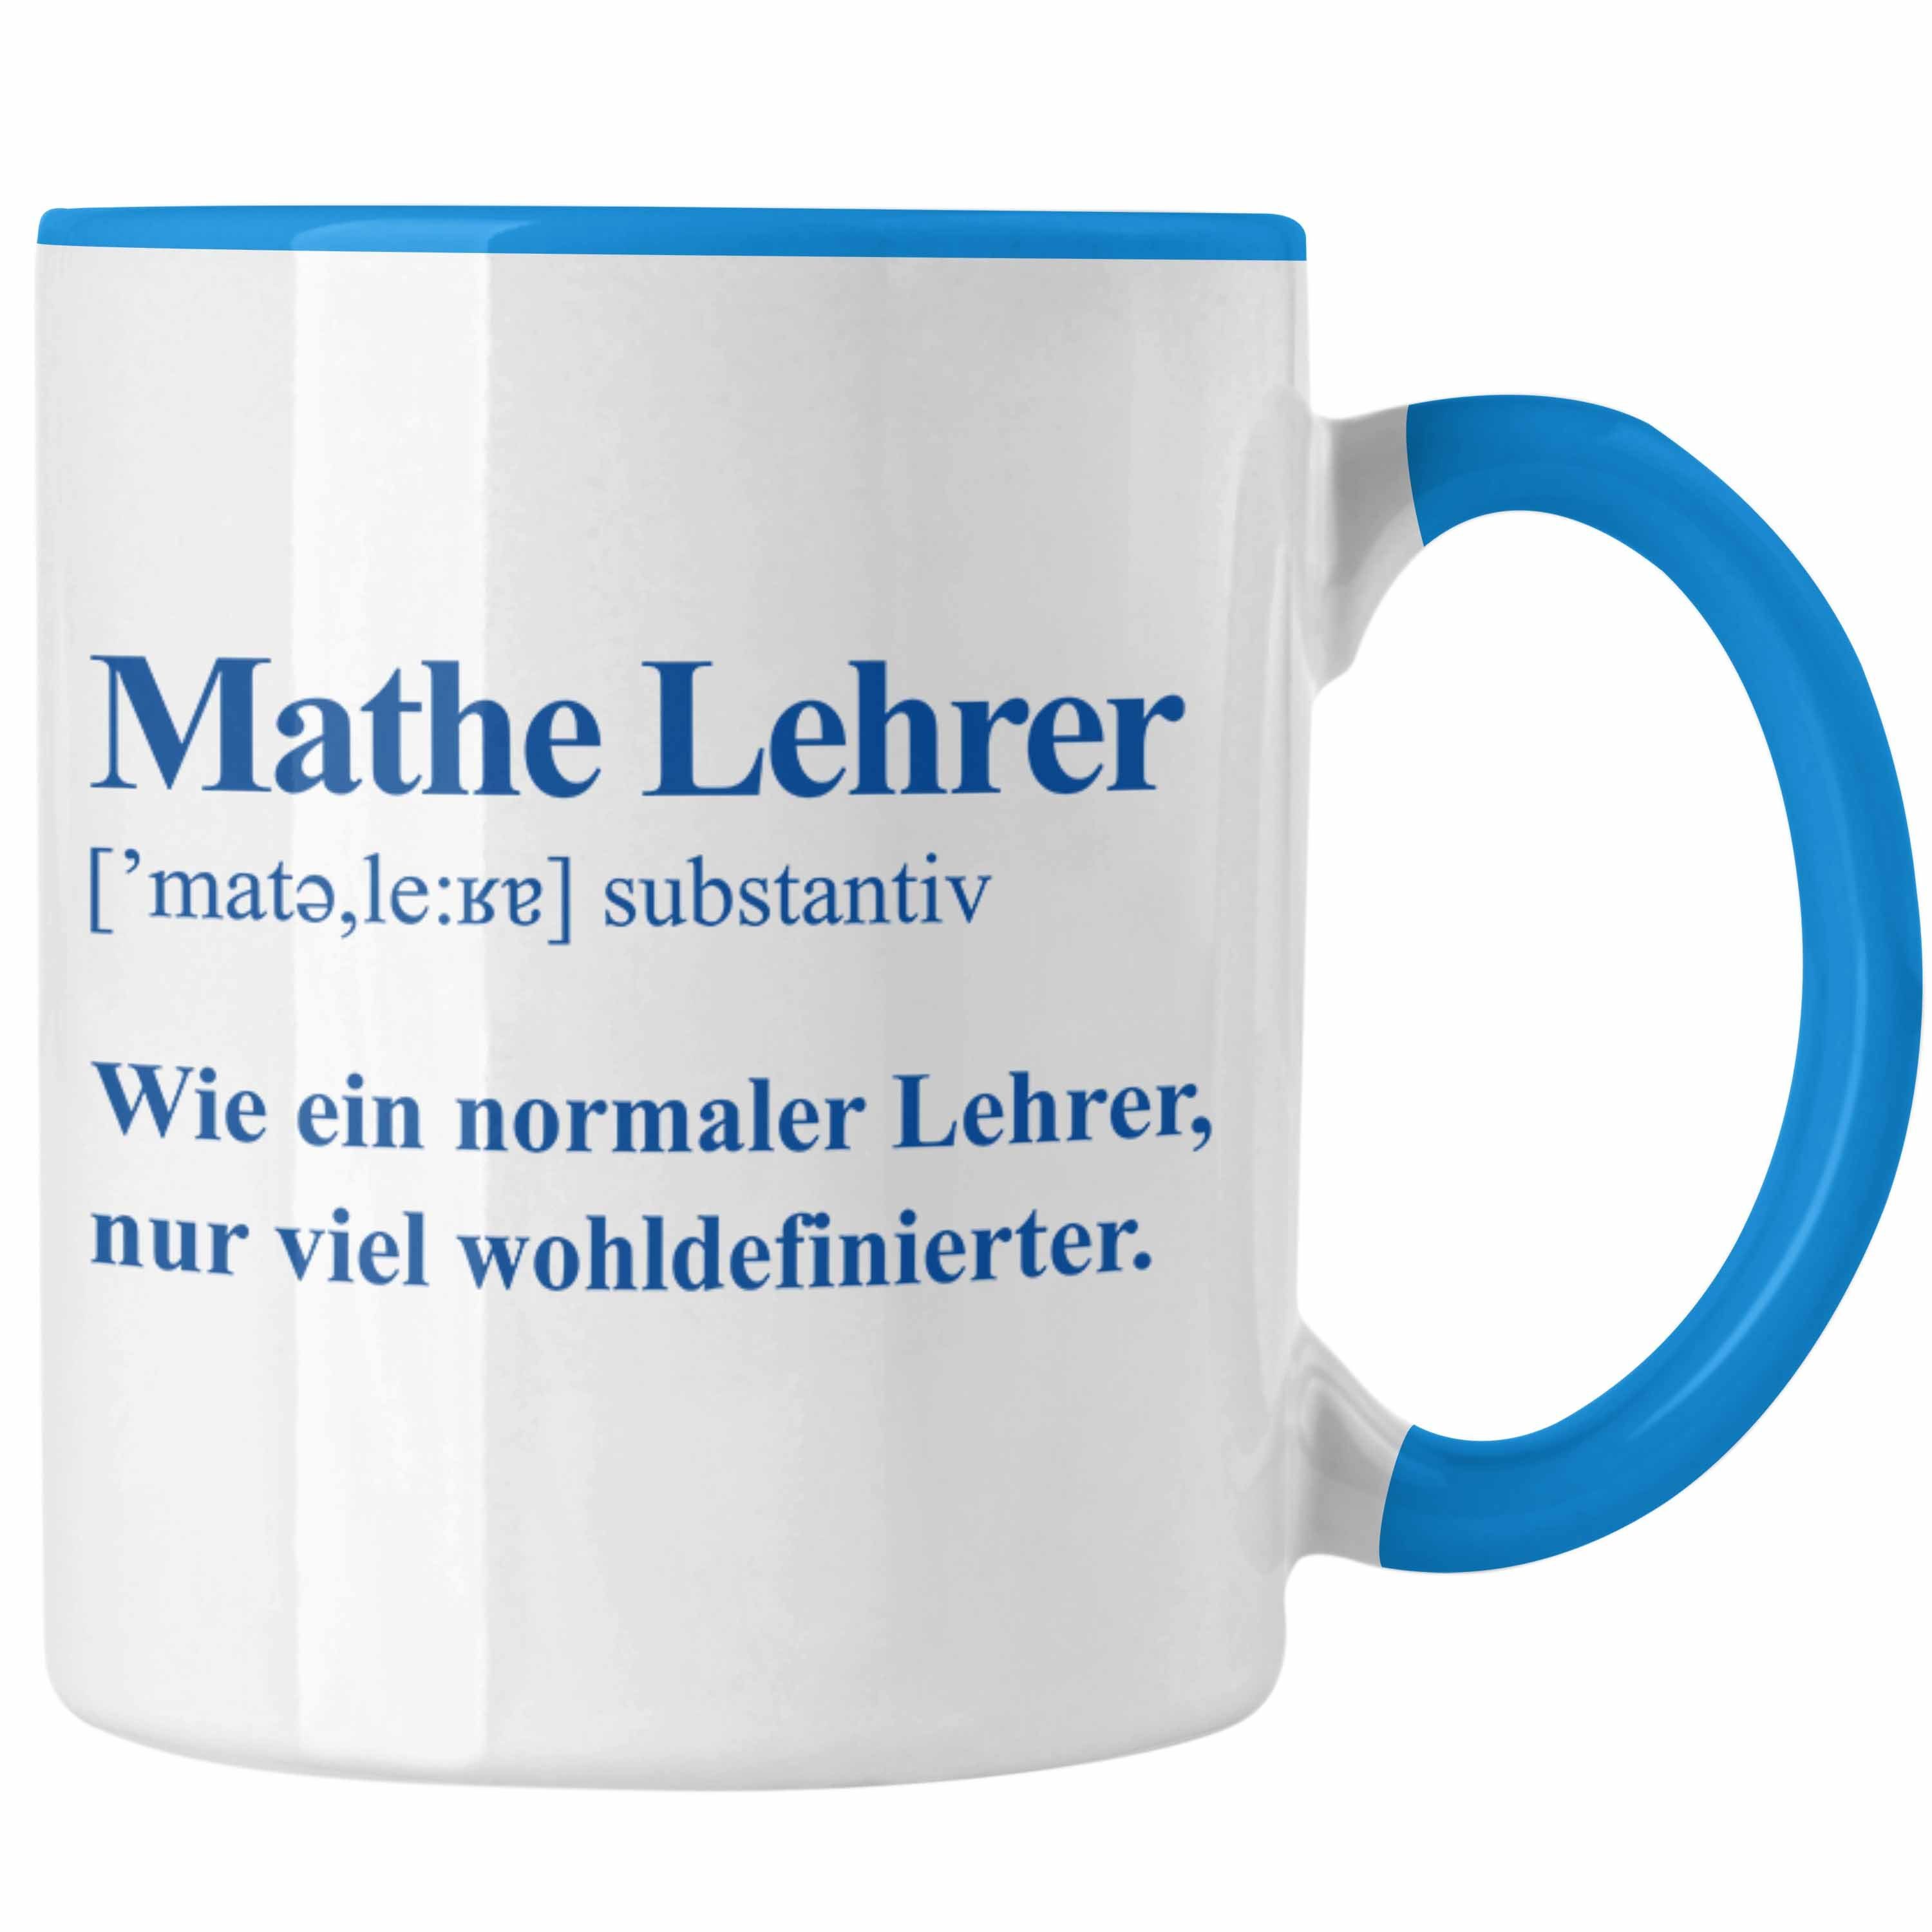 Trendation Tasse Trendation - Mathelehrer Tasse Mathematiker Tassen mit Spruch Lustig Kaffeetasse Geschenk Mathe Lehrer Blau